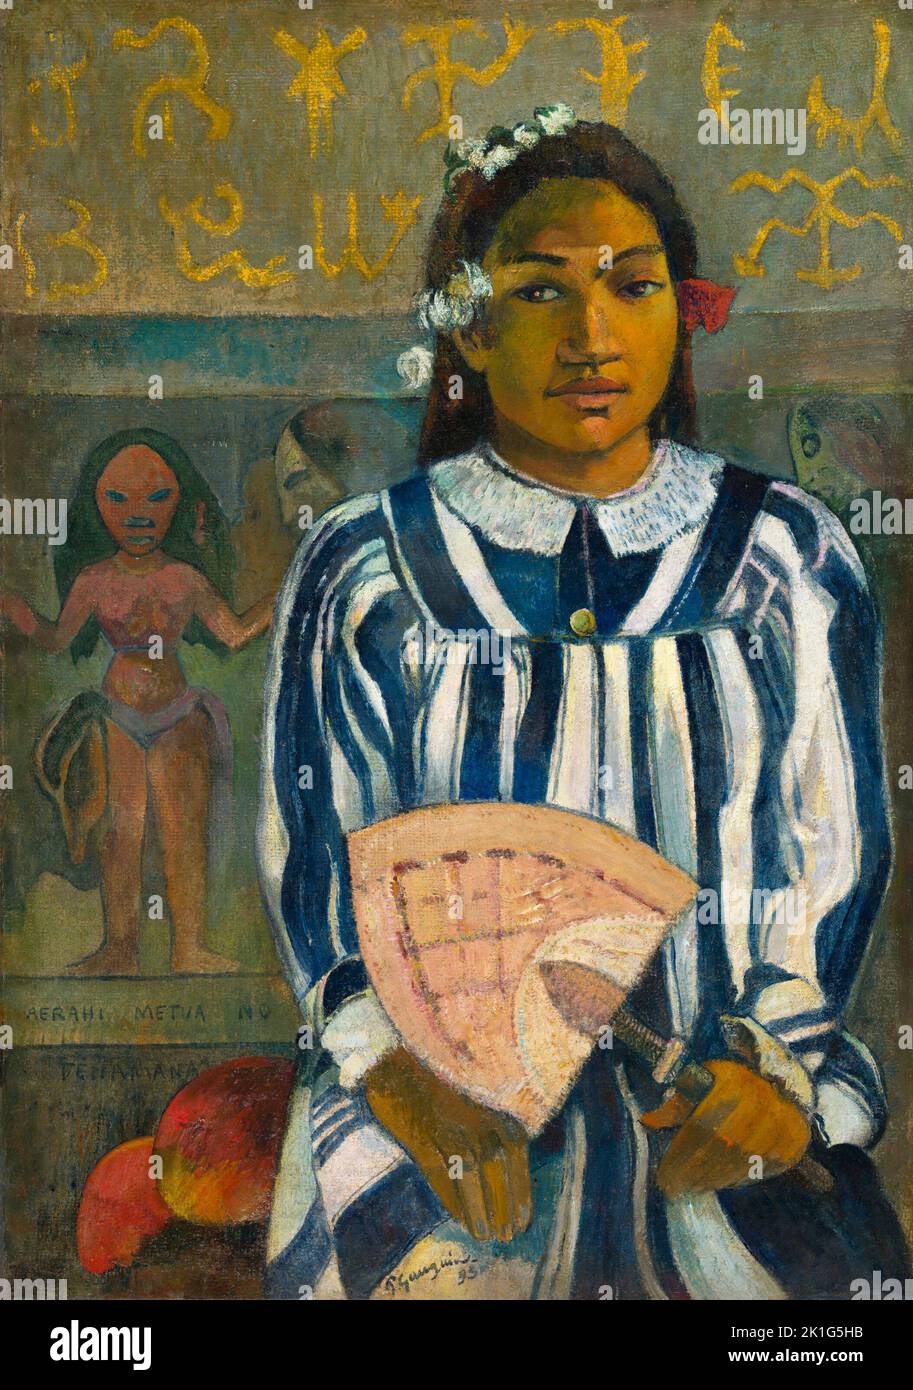 Merahi metua no Tehamana (Tehamana a beaucoup de parents ou les ancêtres de Tehamana). Paul Gauguin. 1893. Banque D'Images